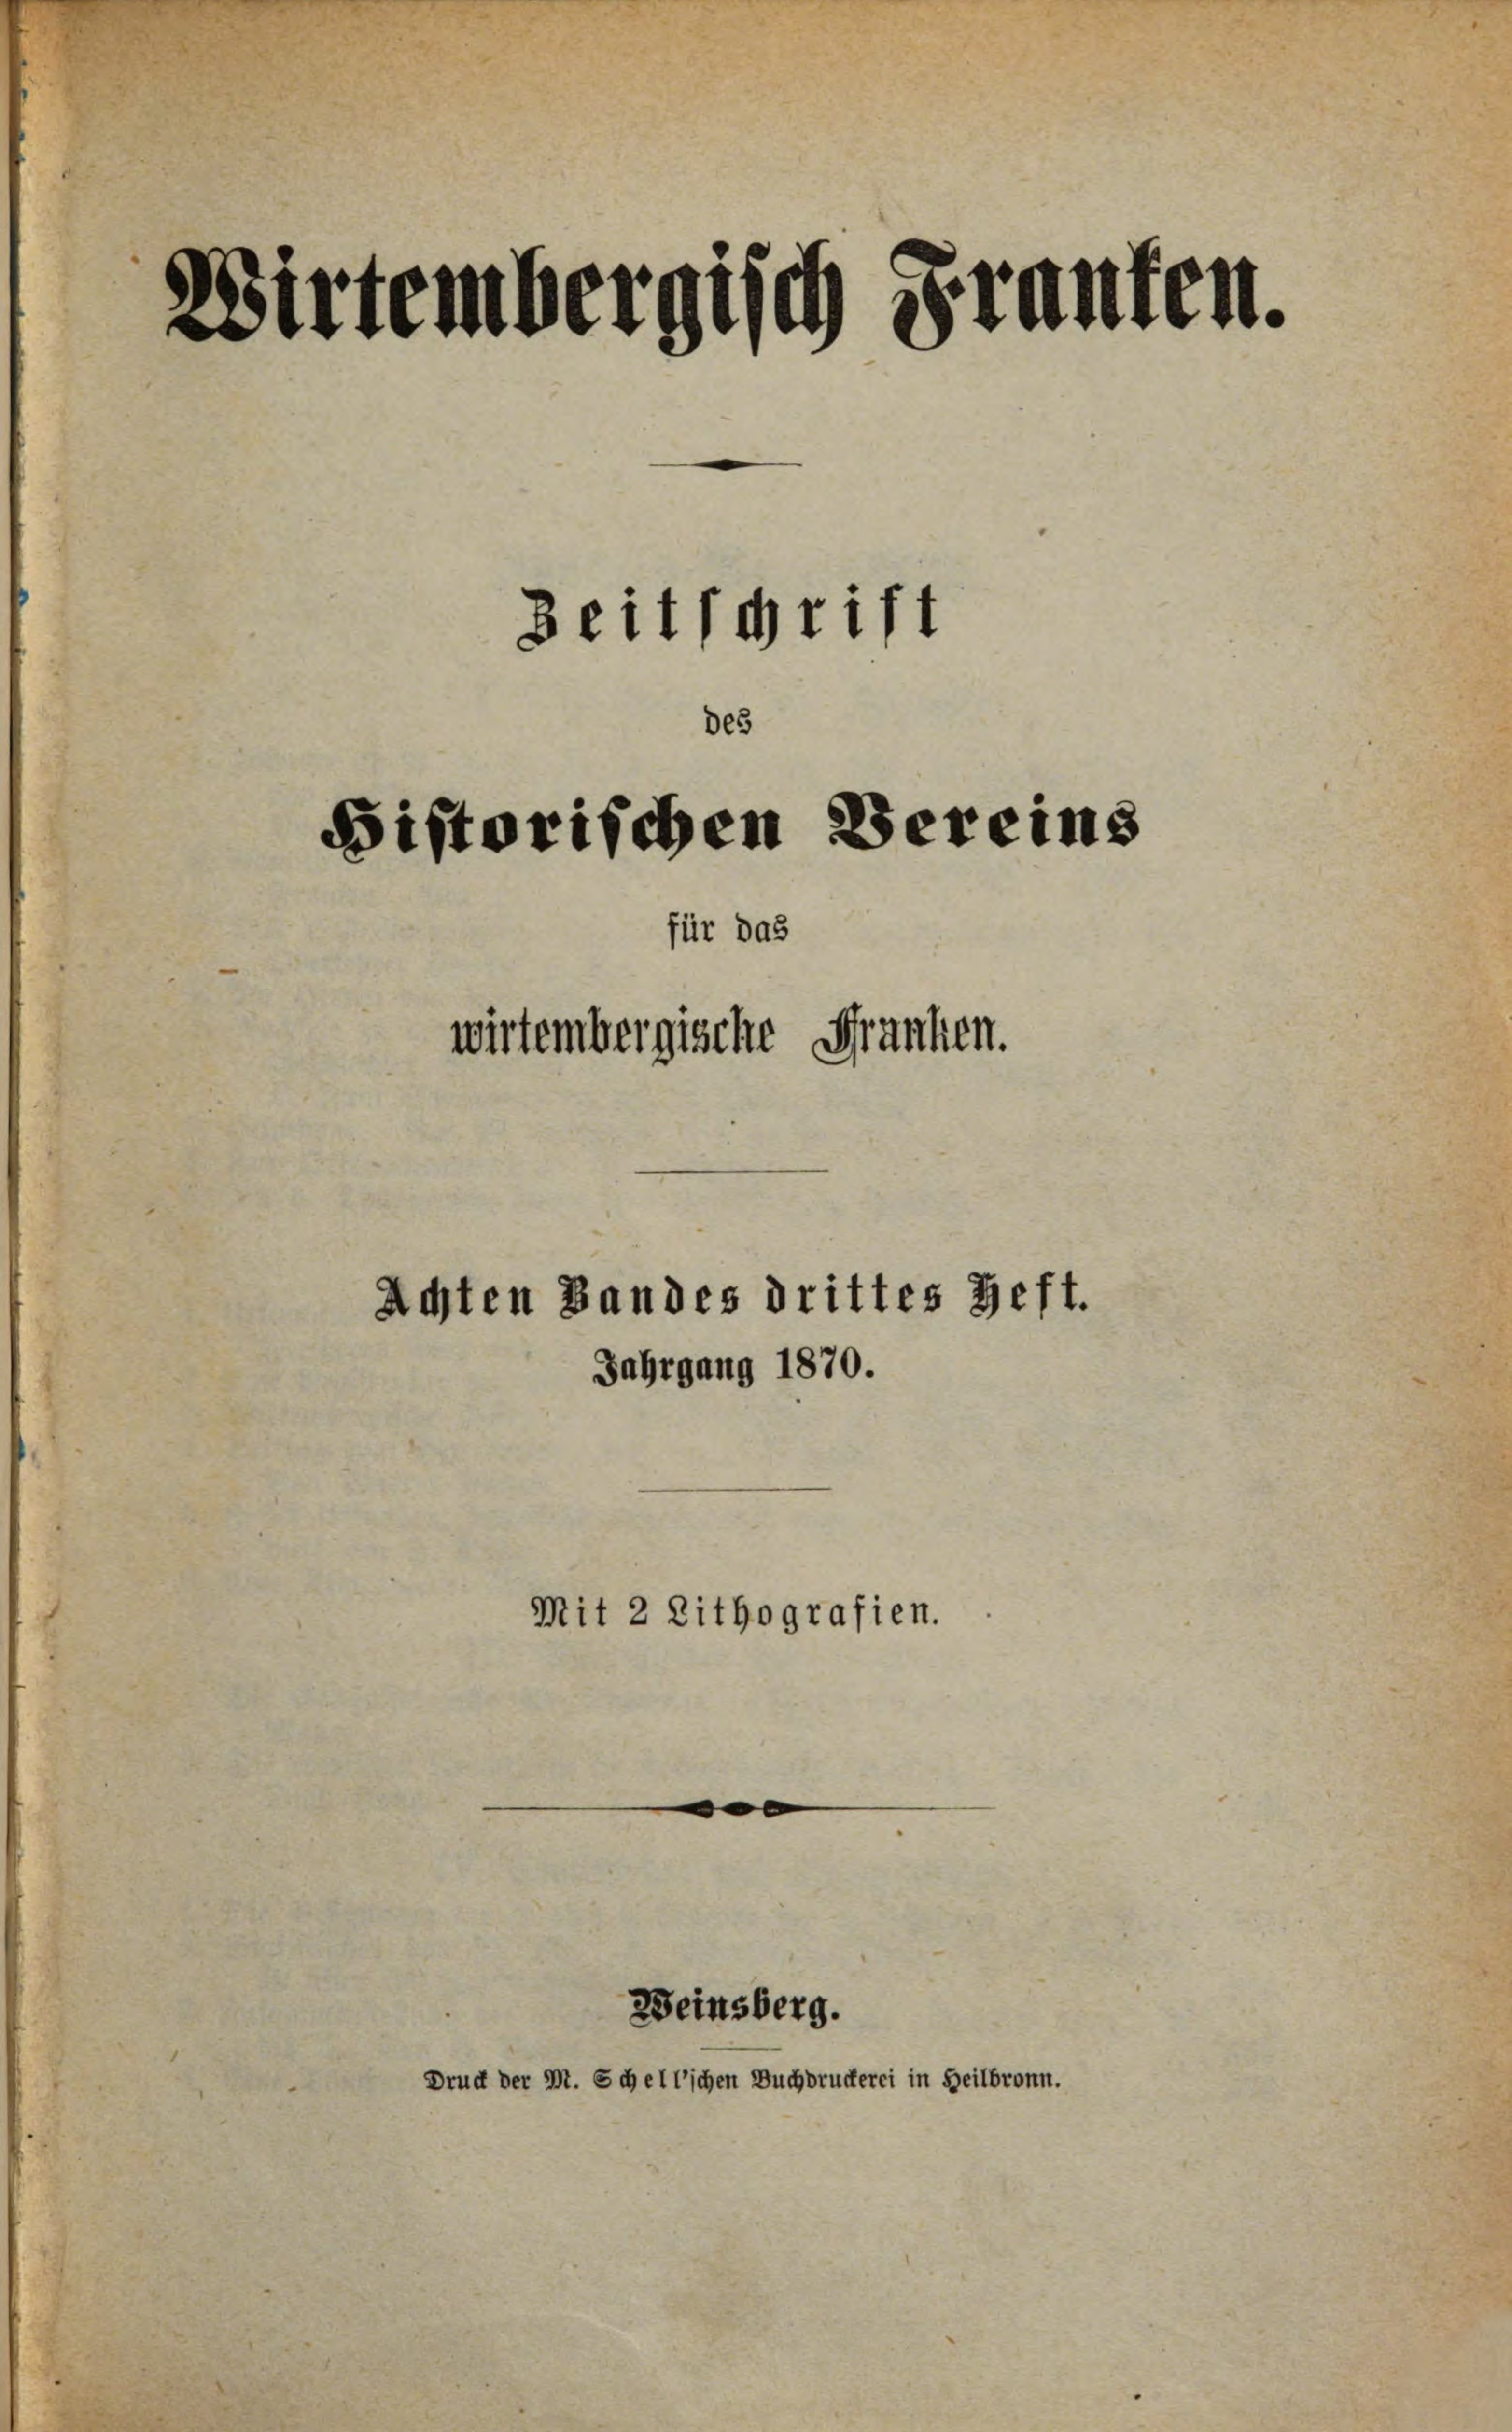                     Ansehen Bd. 8 Nr. 3 (1870): Zeitschrift des Historischen Vereins für das Württembergische Franken
                